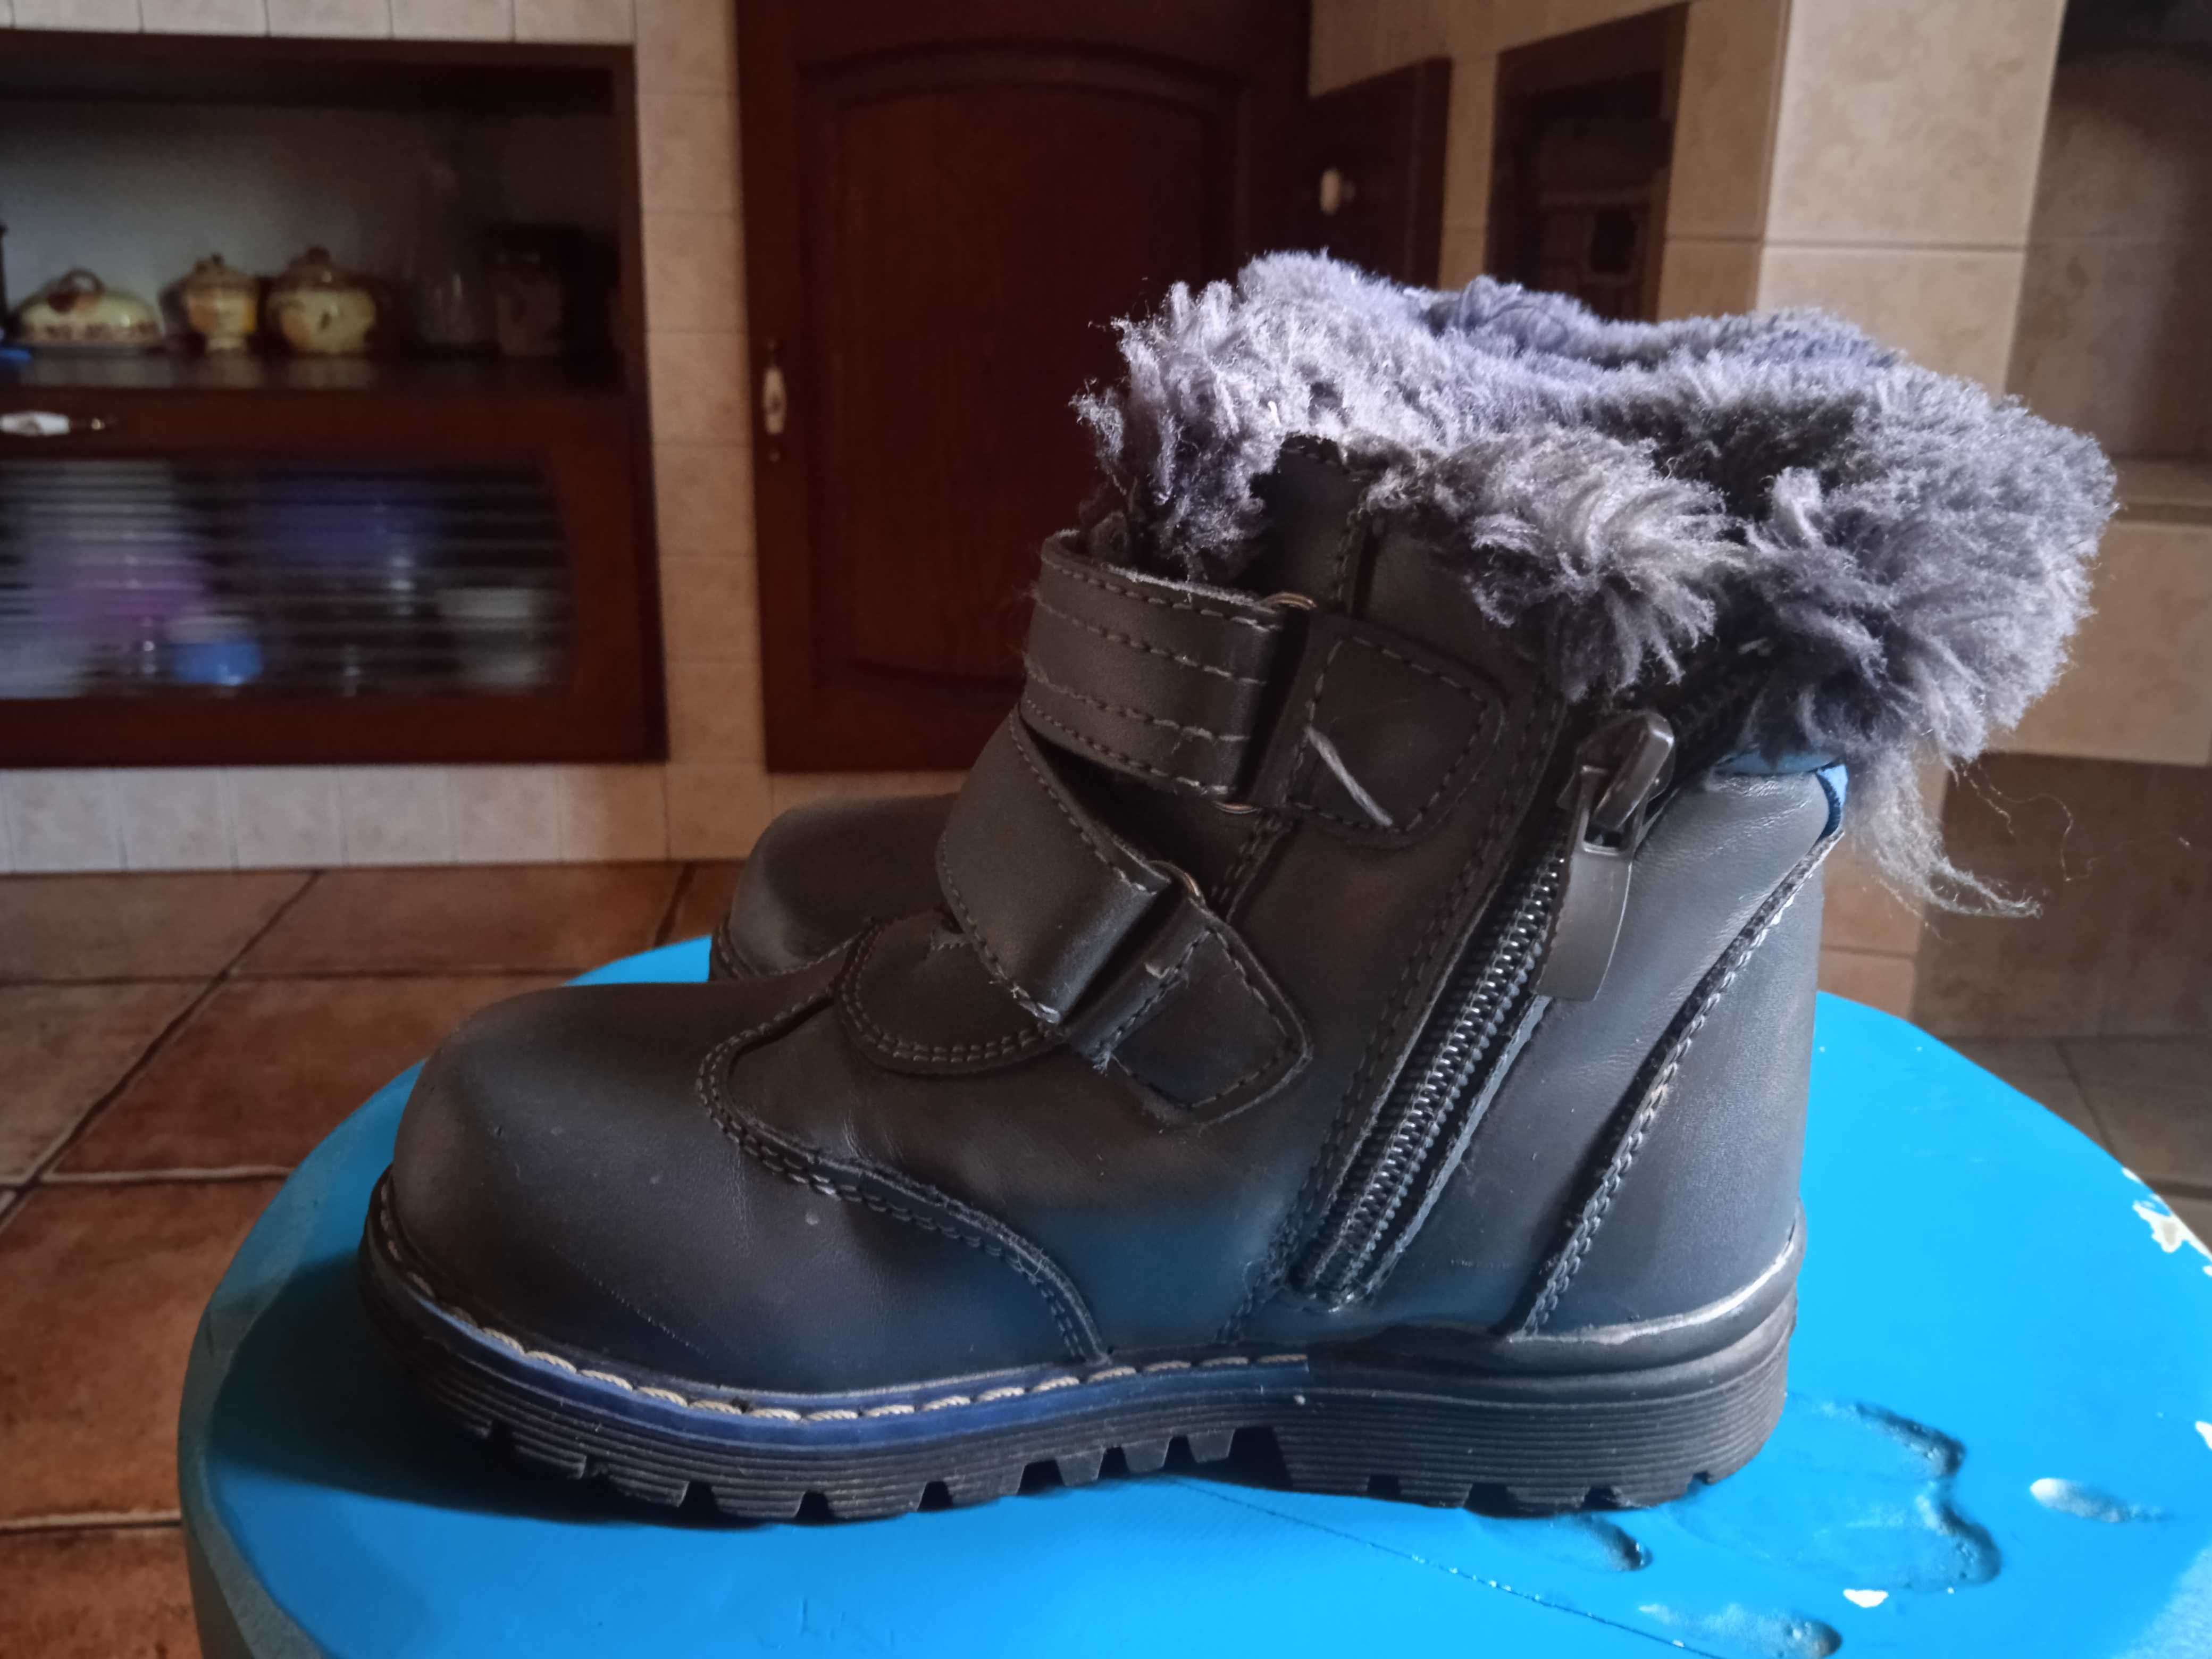 Buty zimowe dla chłopca chłopięce trzewiki super ciepłe r. 26